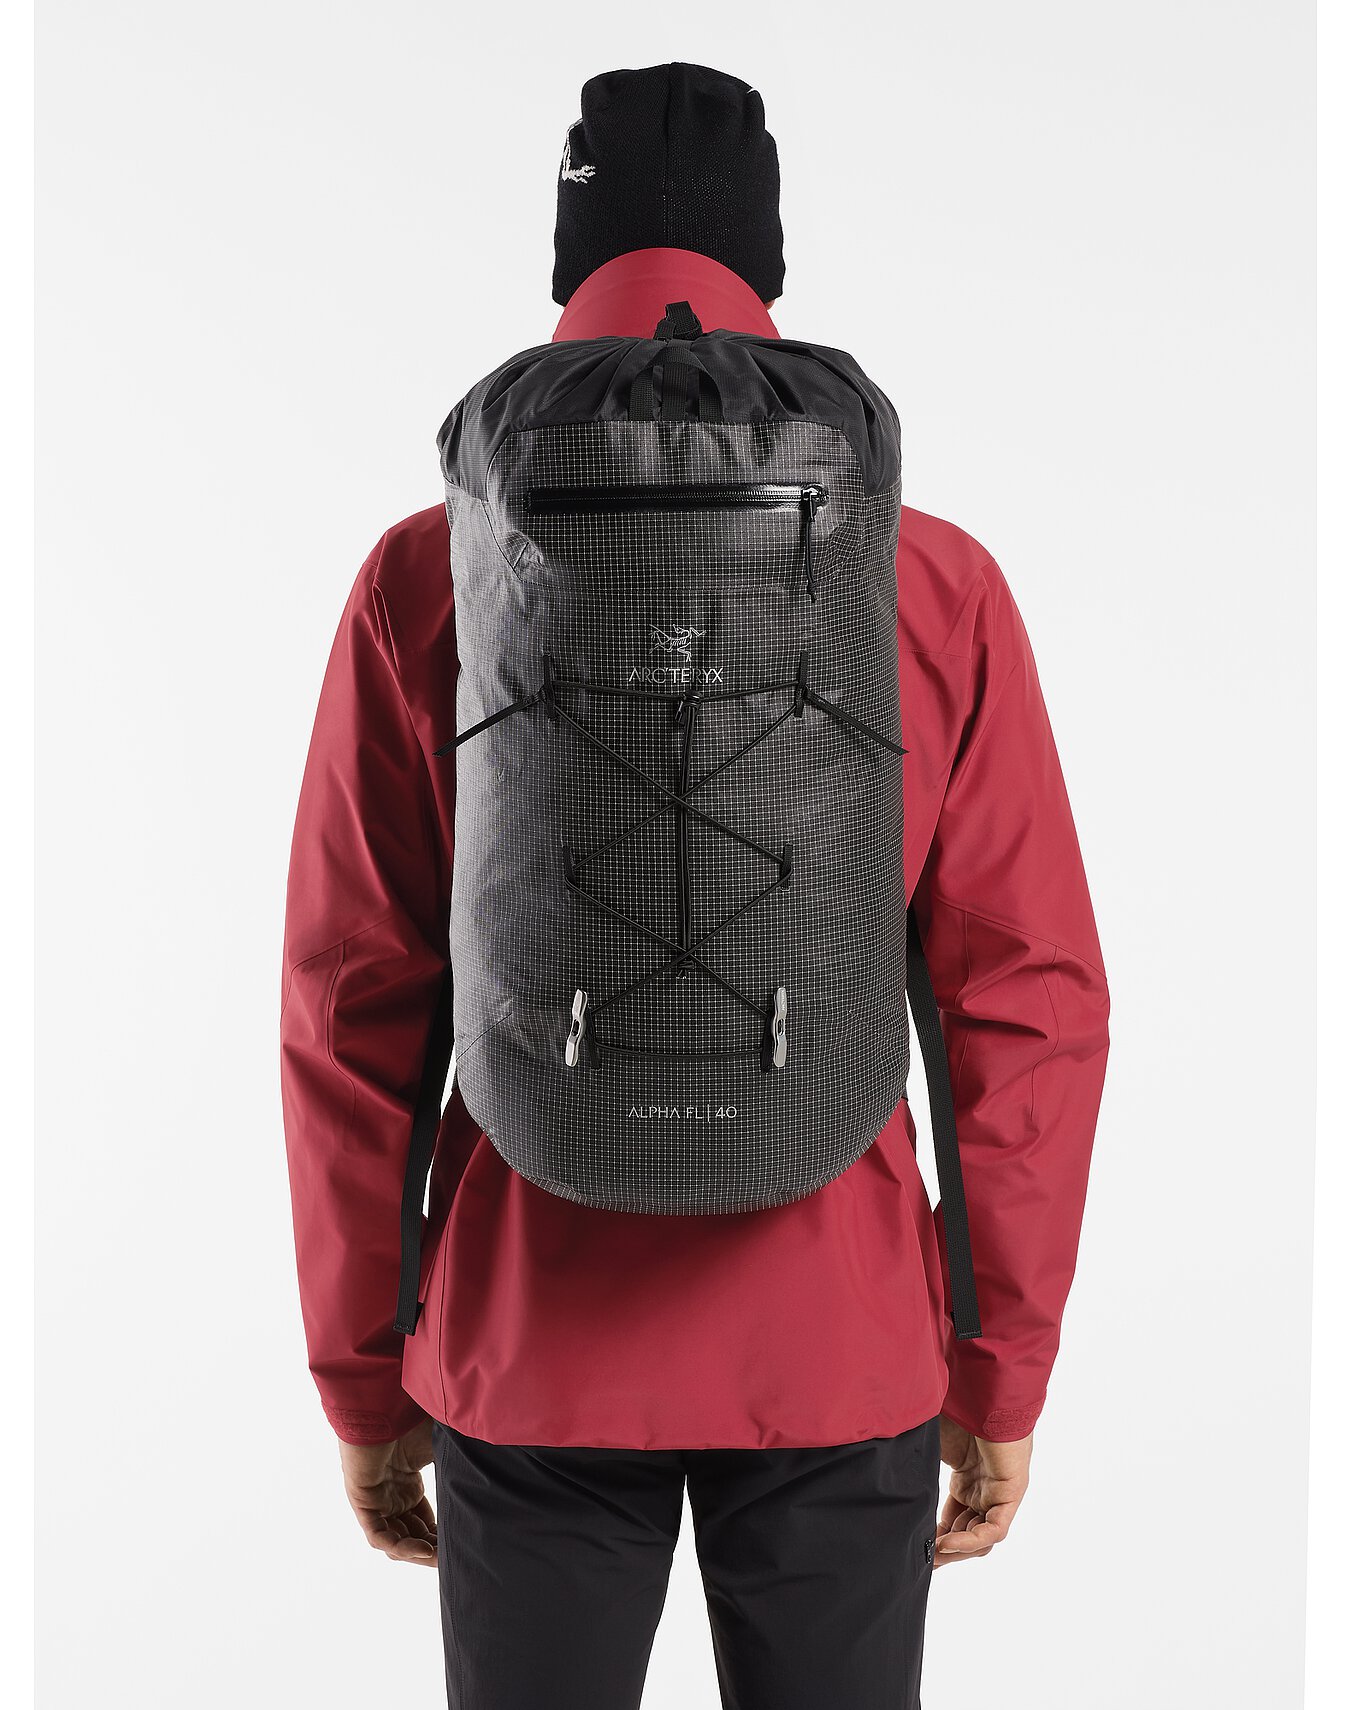 Alpha FL 40 Backpack | Arc'teryx Outlet